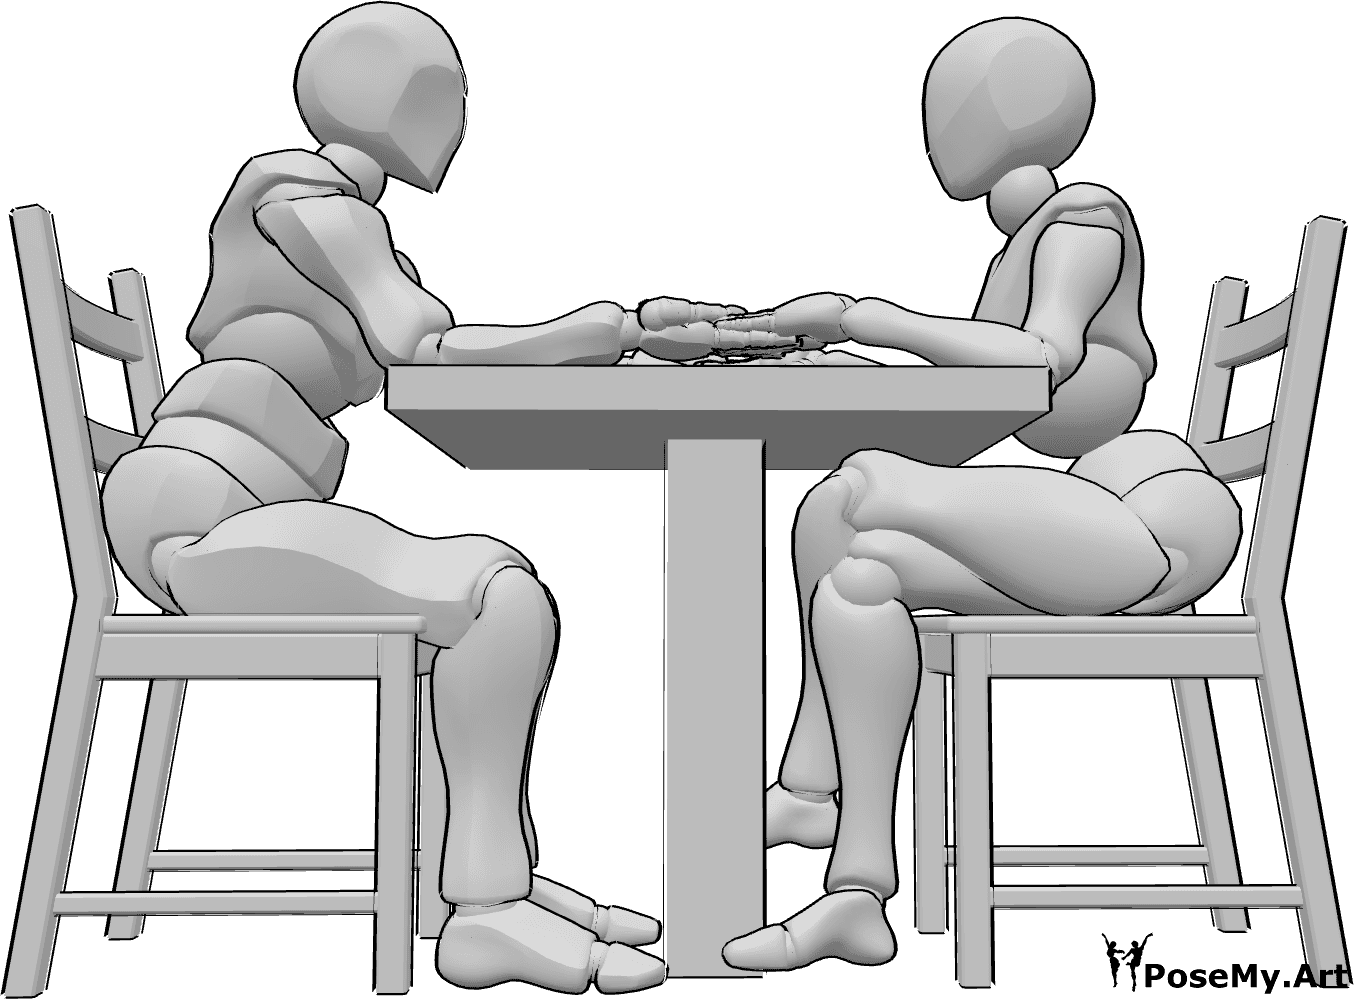 Referencia de poses- Postura sentada romántica - Mujer y hombre están sentados en una mesa uno frente al otro y cogidos de la mano